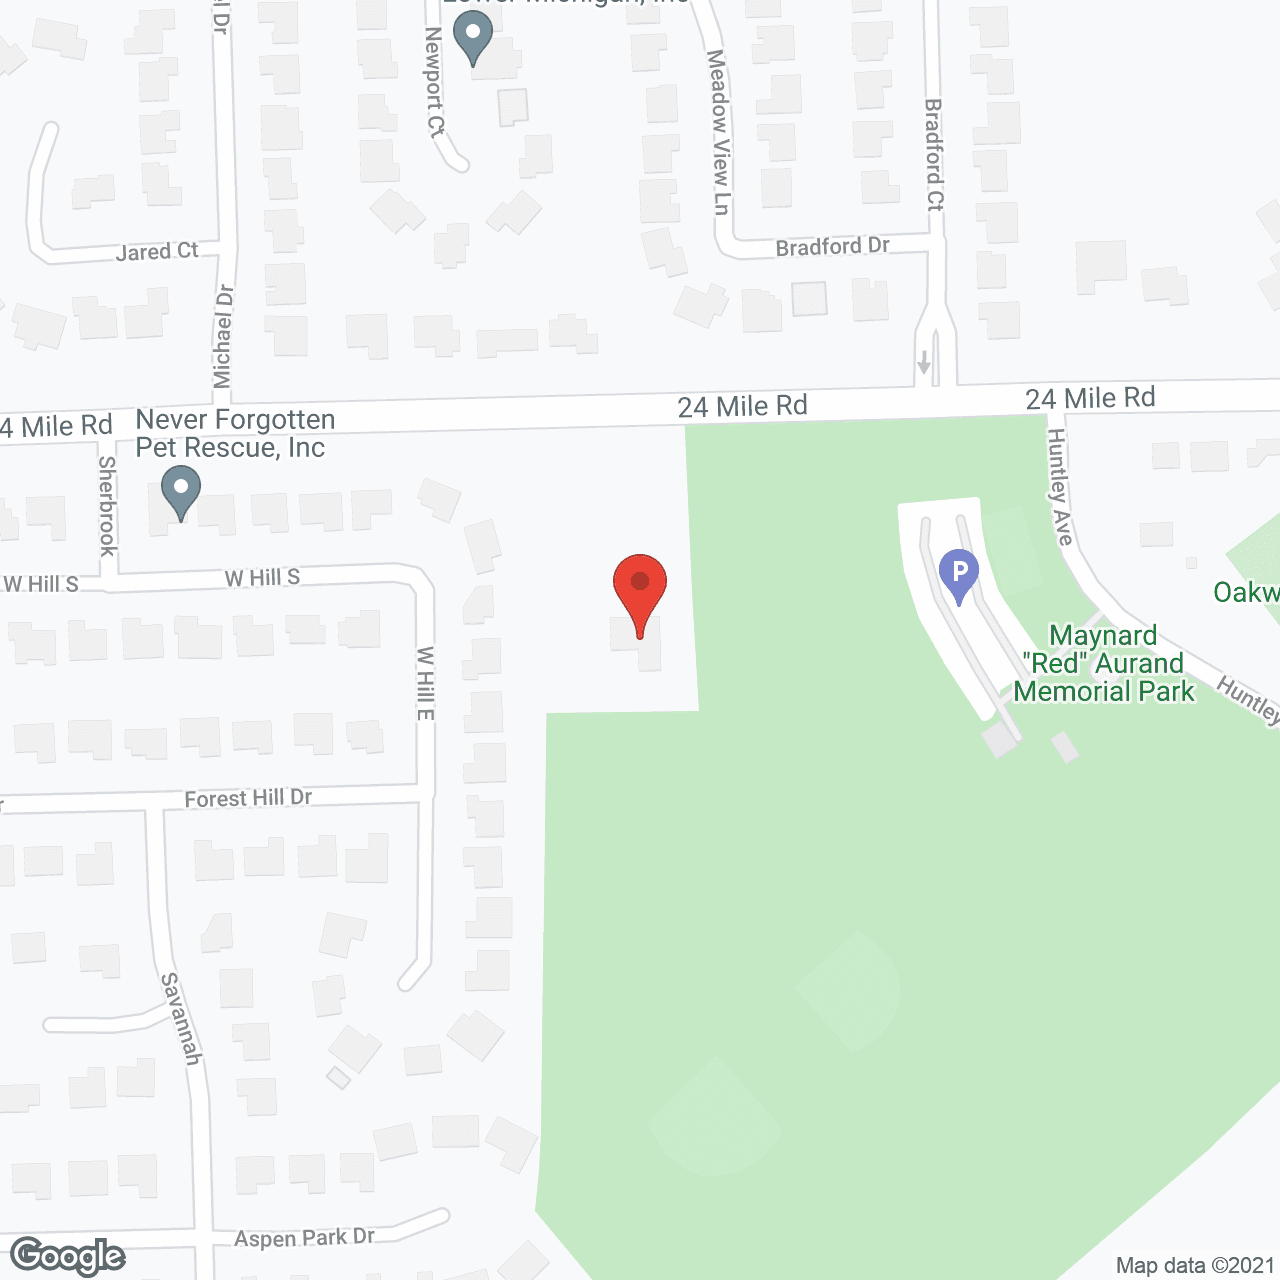 Torrey Pines Senior Residence in google map